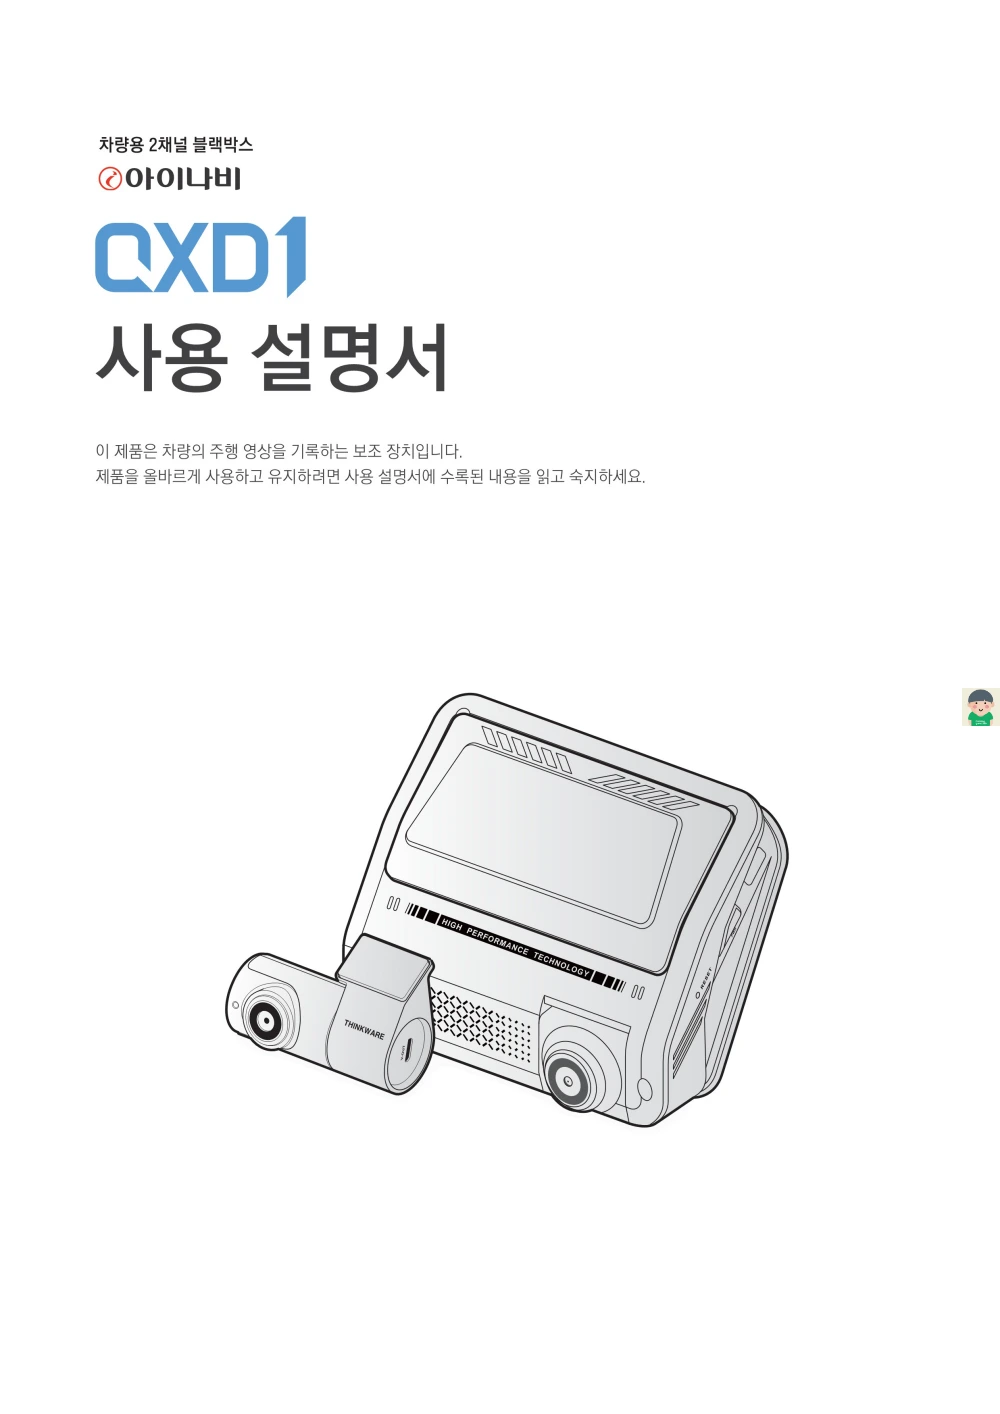 아이나비 QXD1 - 제품스펙과 사용설명서 설치나 다운로드없이 바로보기